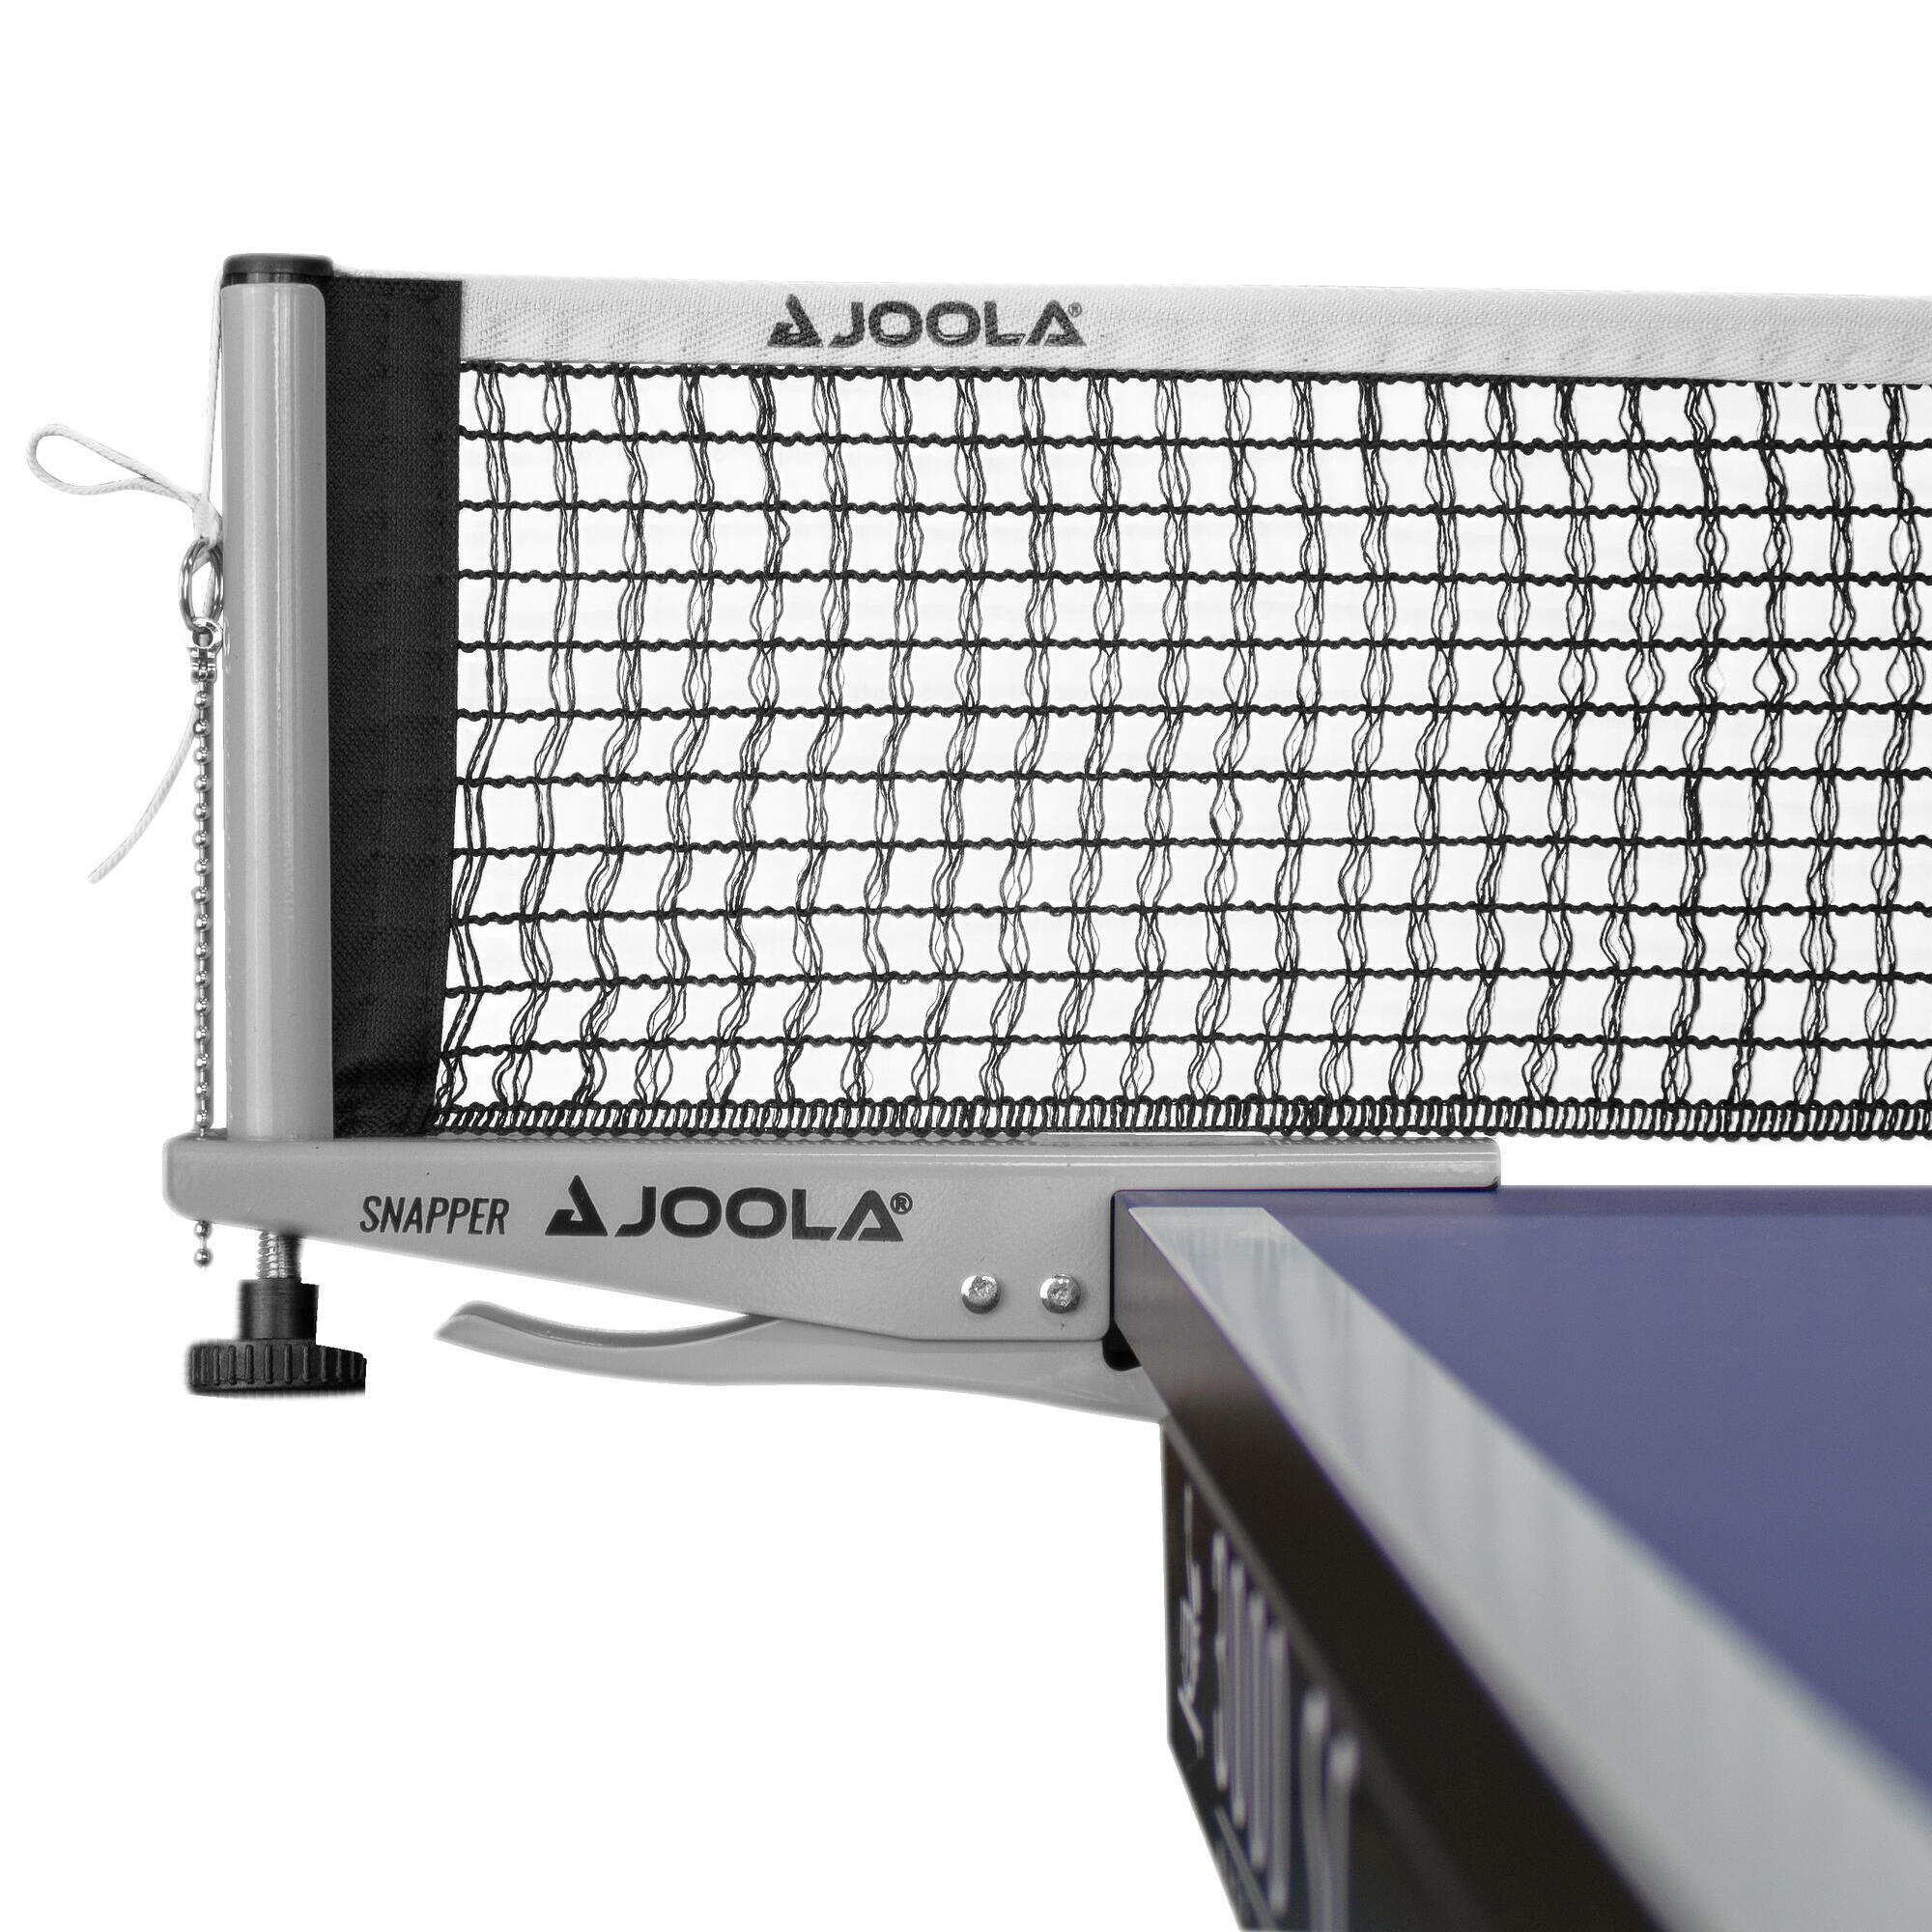 Набор сеток для настольного тенниса Joola Snapper, серый/серебристый/белый поролоновый аппликатор для накладок для настольного тенниса joola